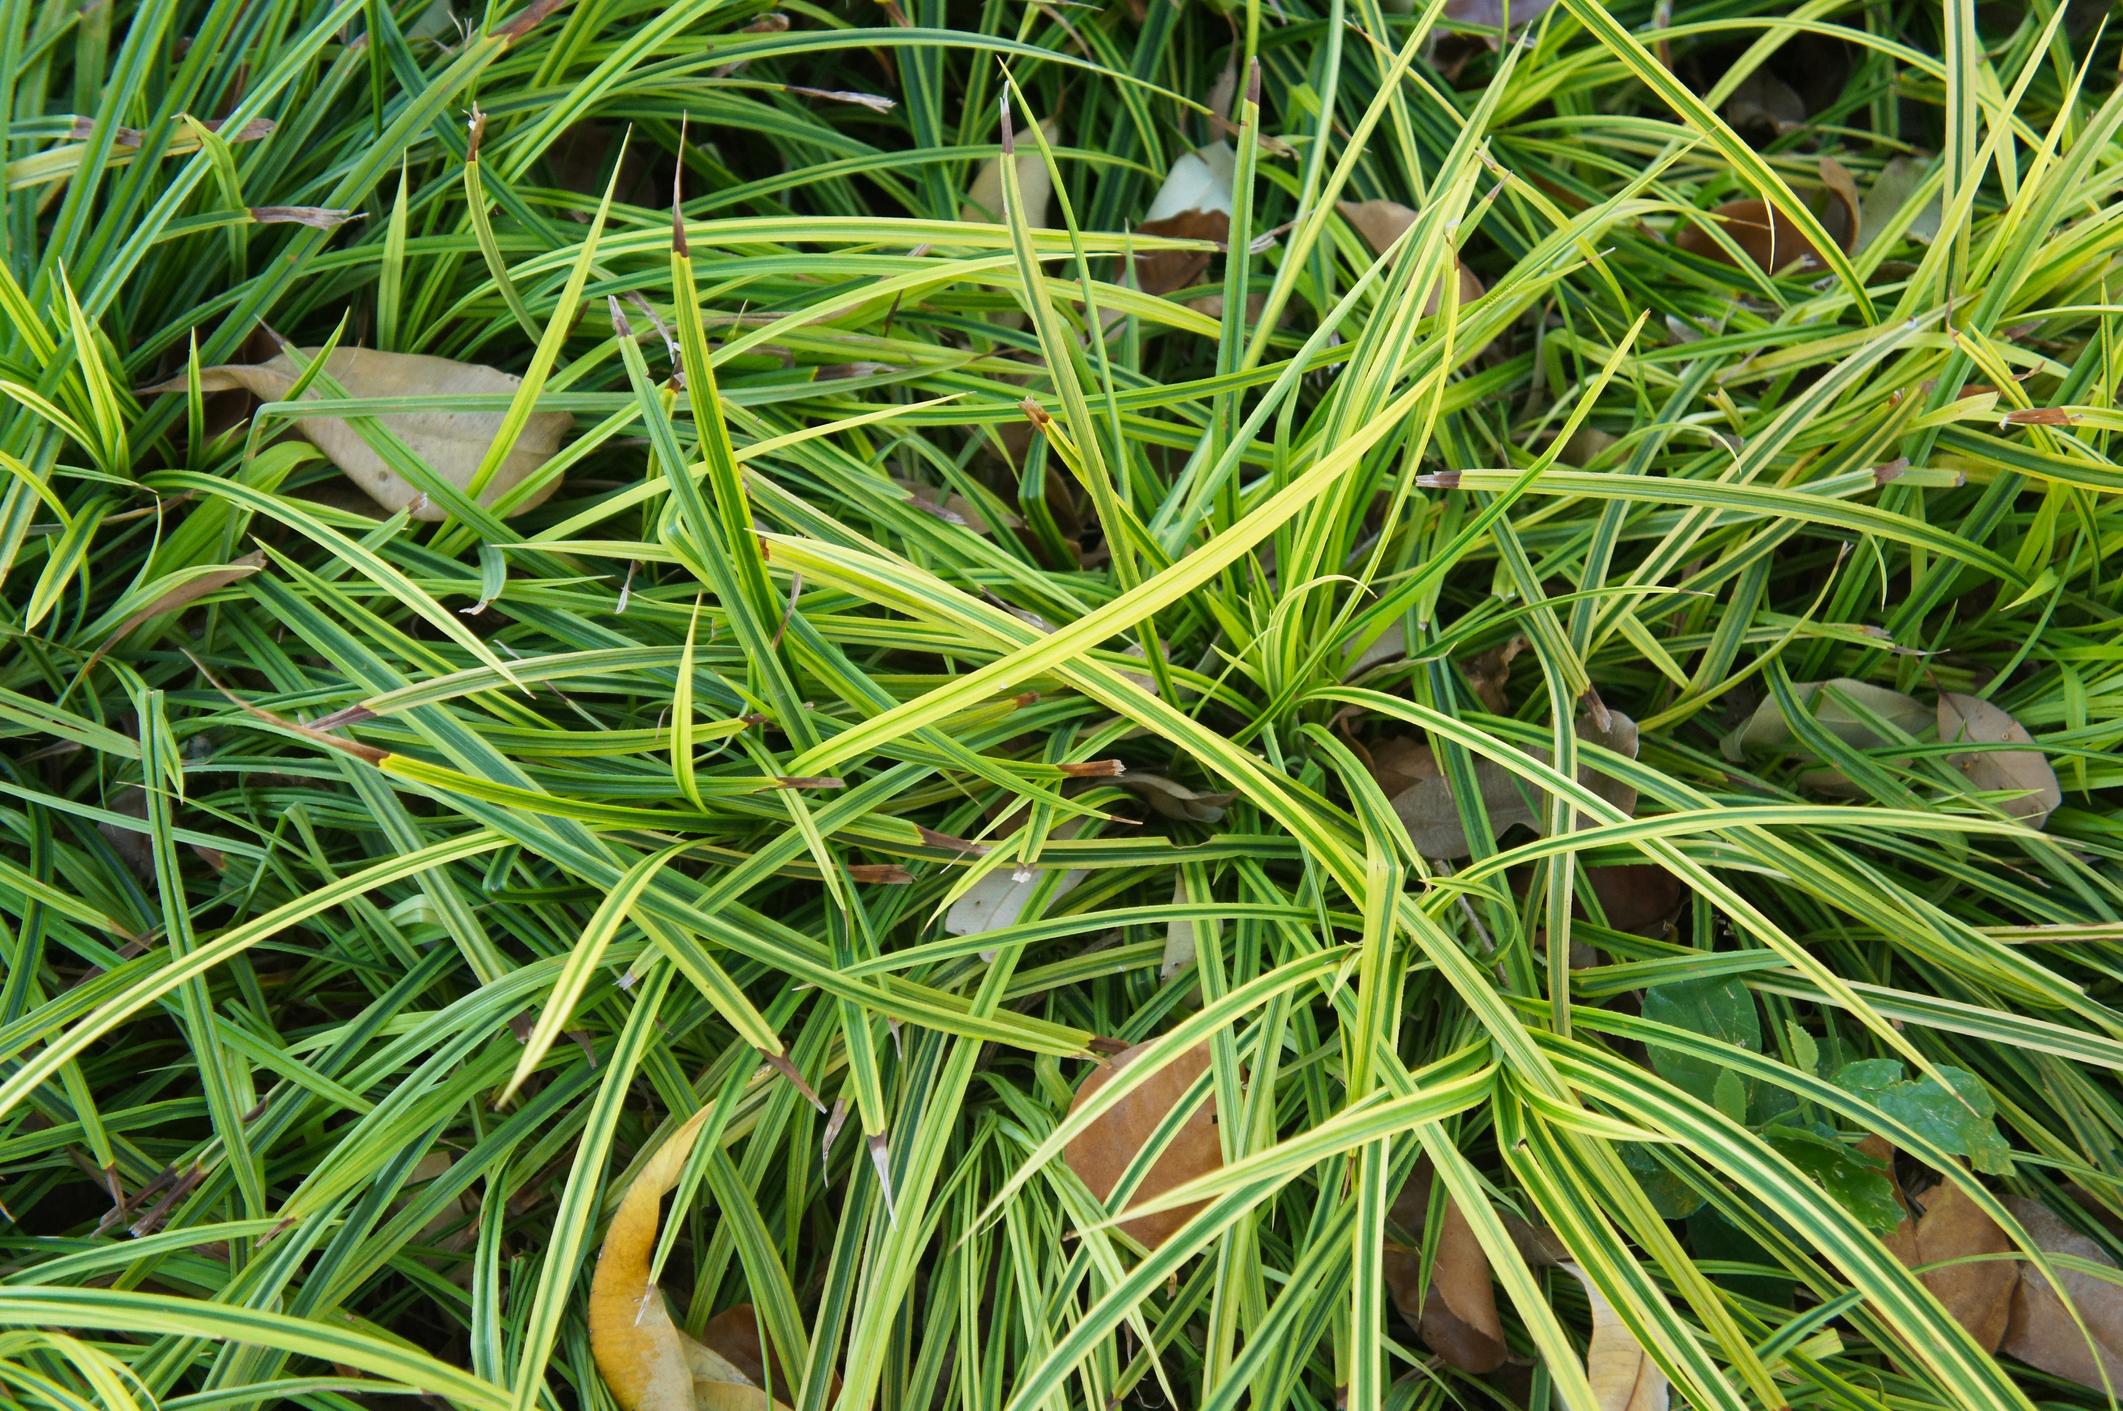 Segge (Carex)